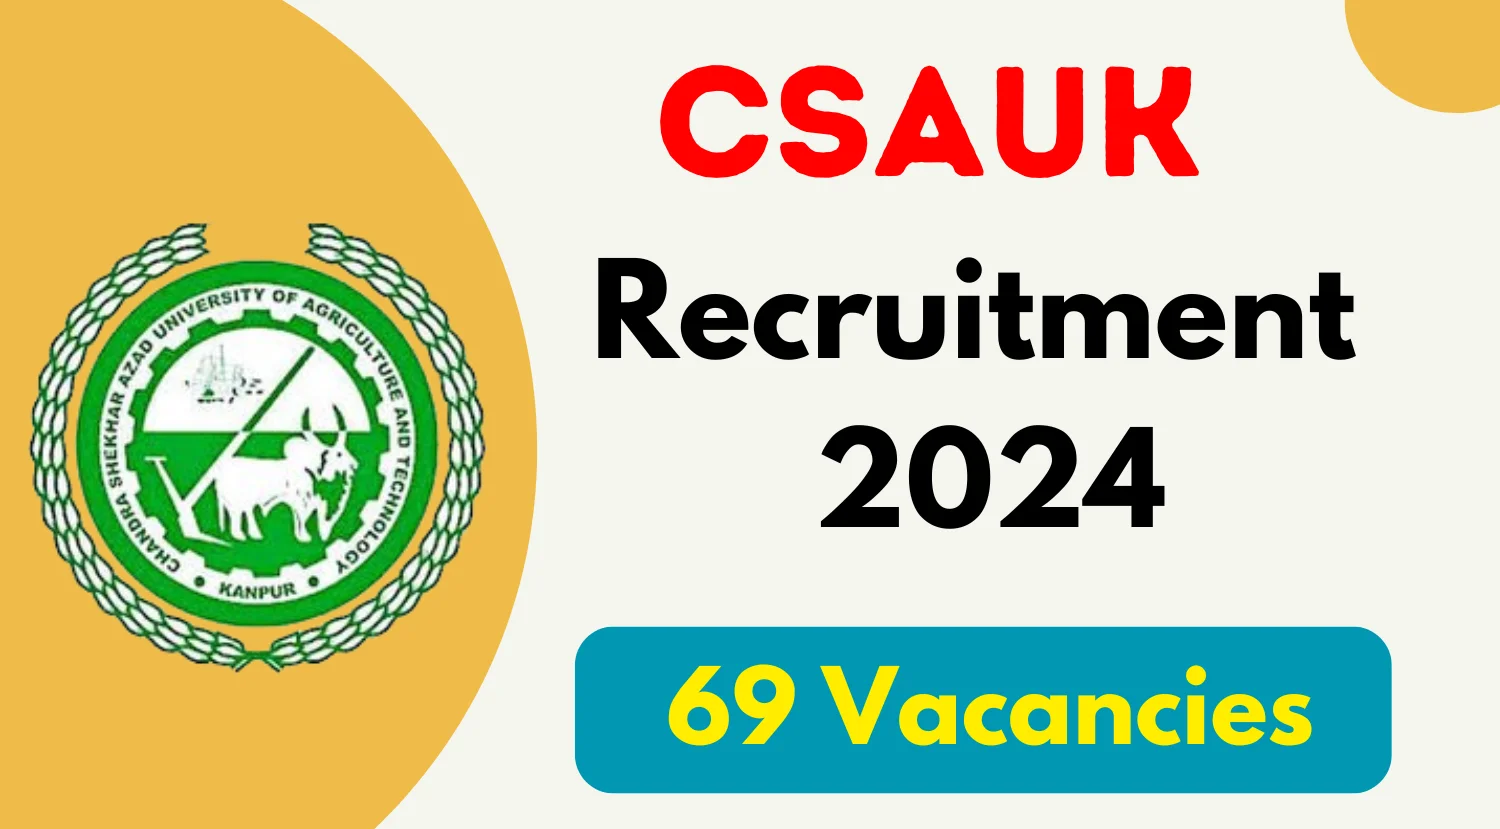 CSAUK Professor and Associate Professor Recruitment 2024